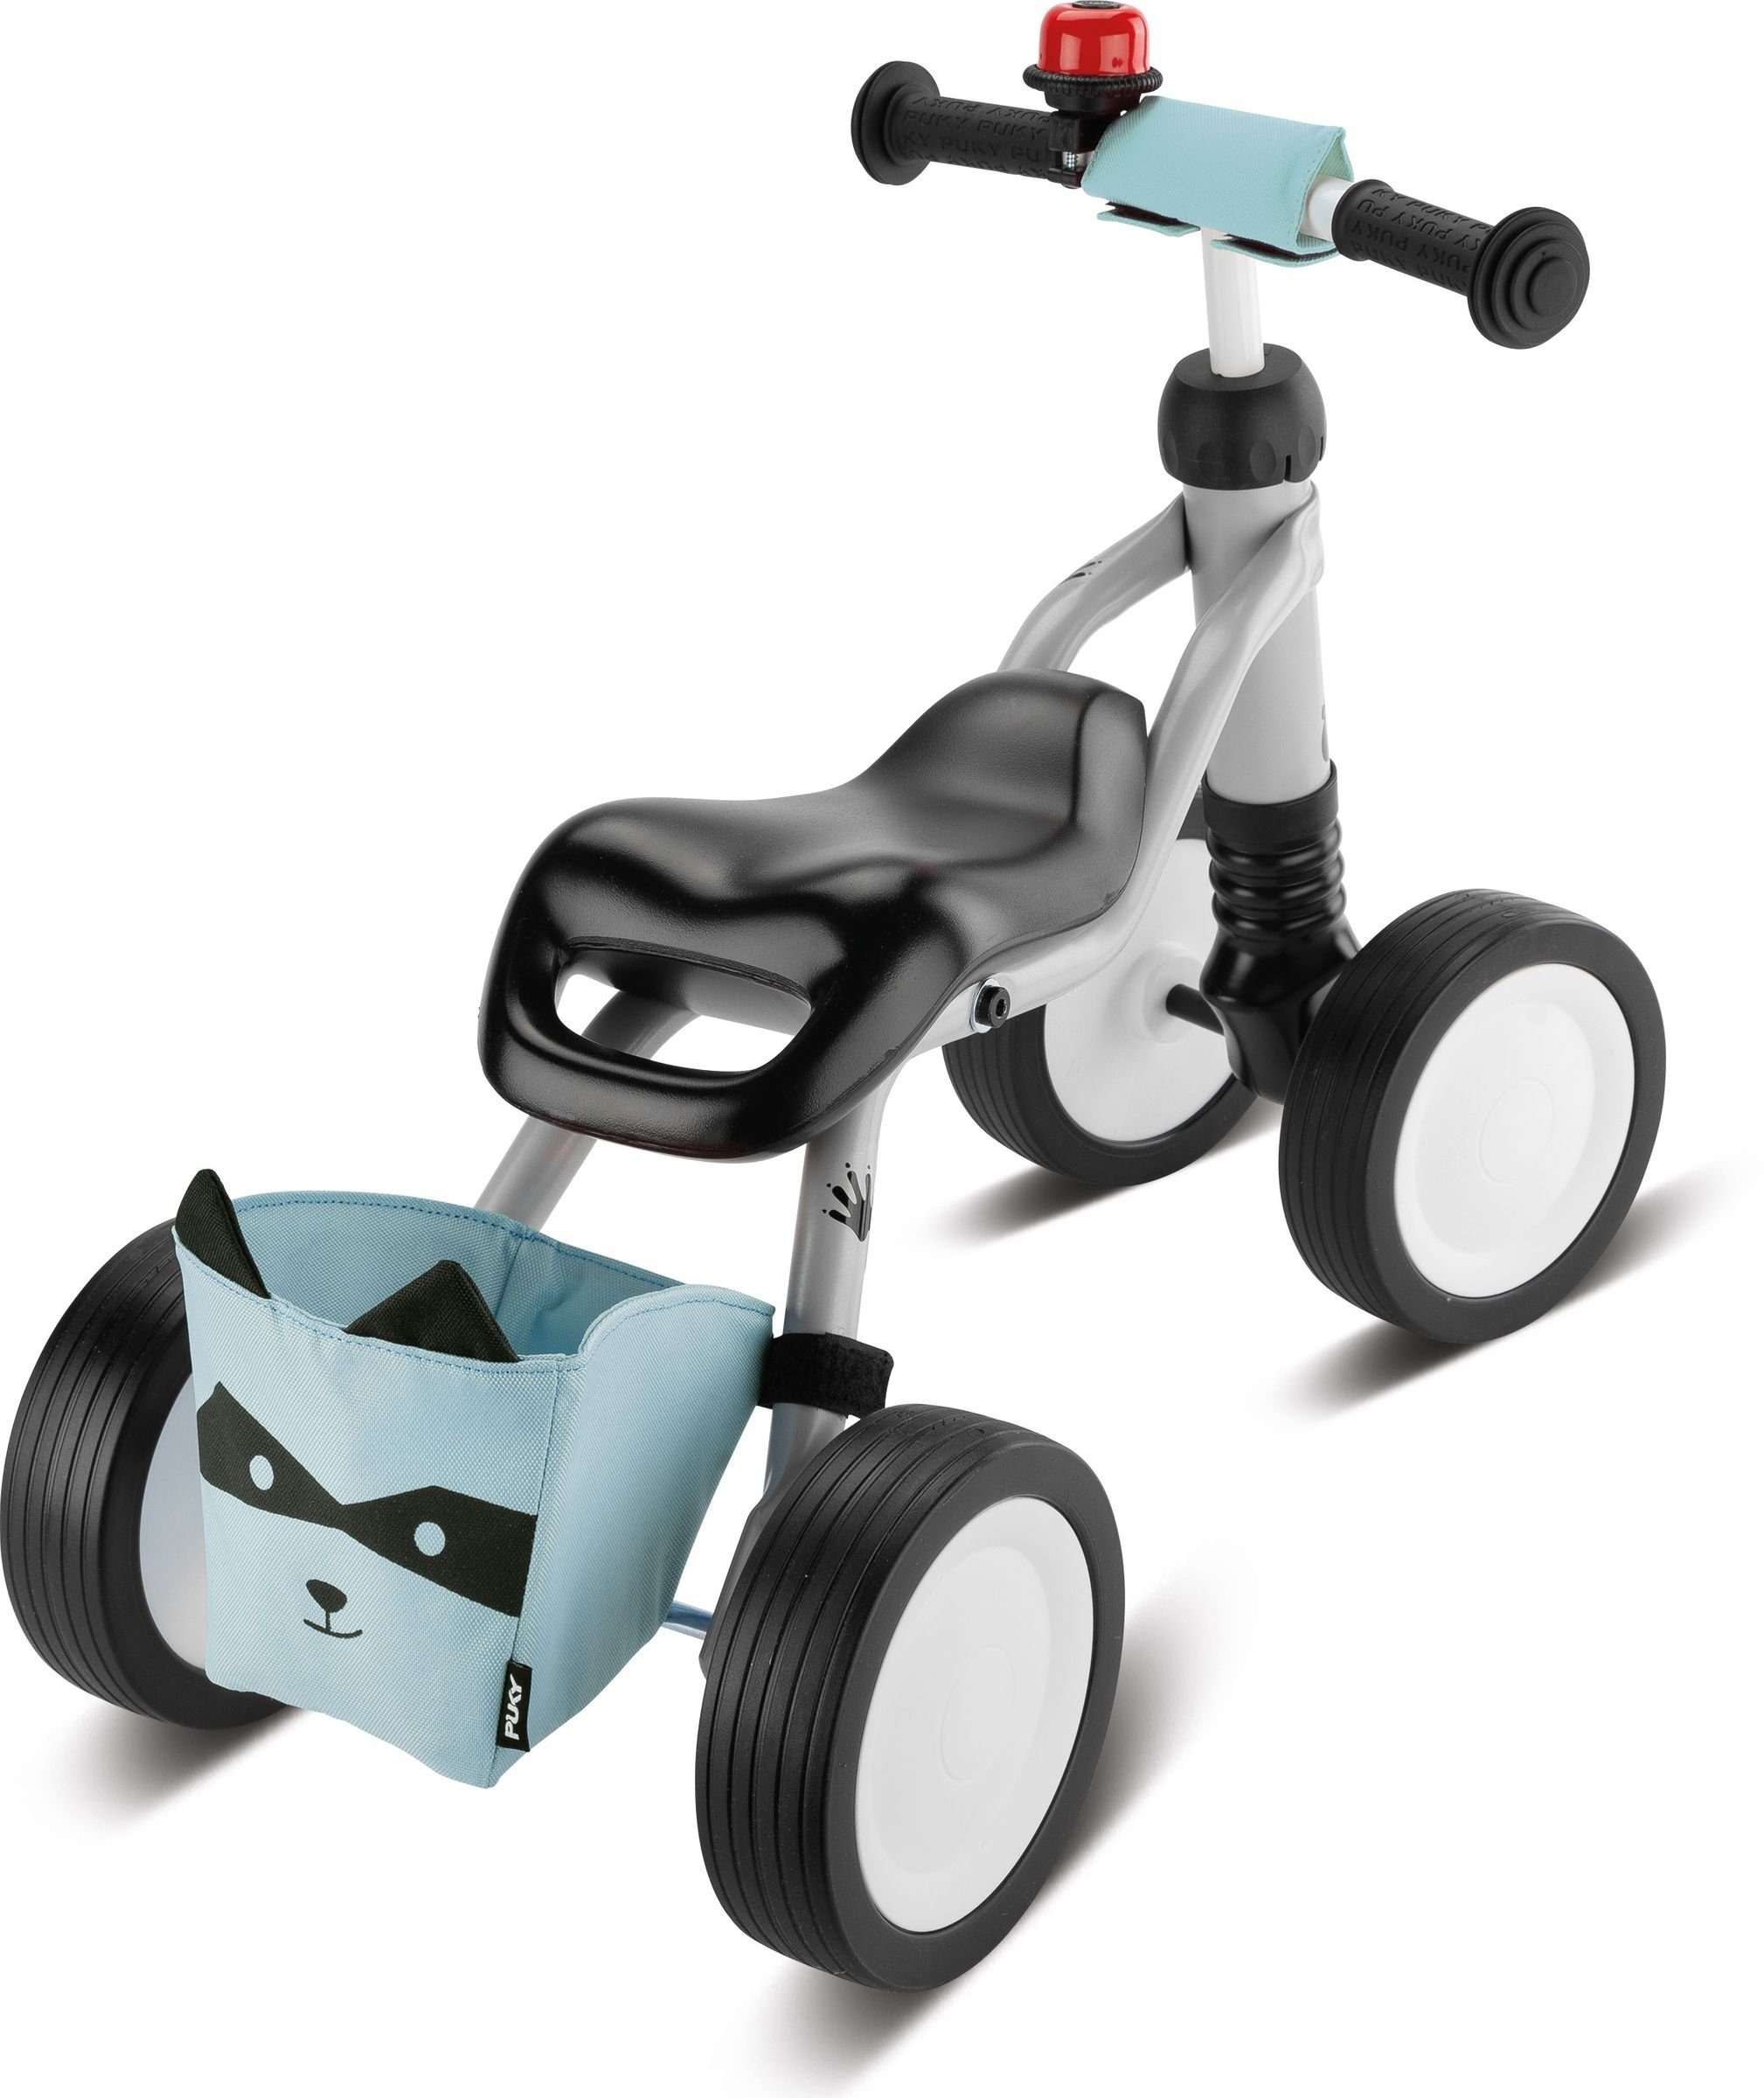 Kleinkinder sicheres Laufrädern, für 1 und mit ergonomischem Sitz Puky Rutschrad Laufrad Laufrad grey/lightblue Rutschfahrzeug, Wutsch Lenkeinschlagsbegrenzung ab Bundle, Jahr leisen Puky